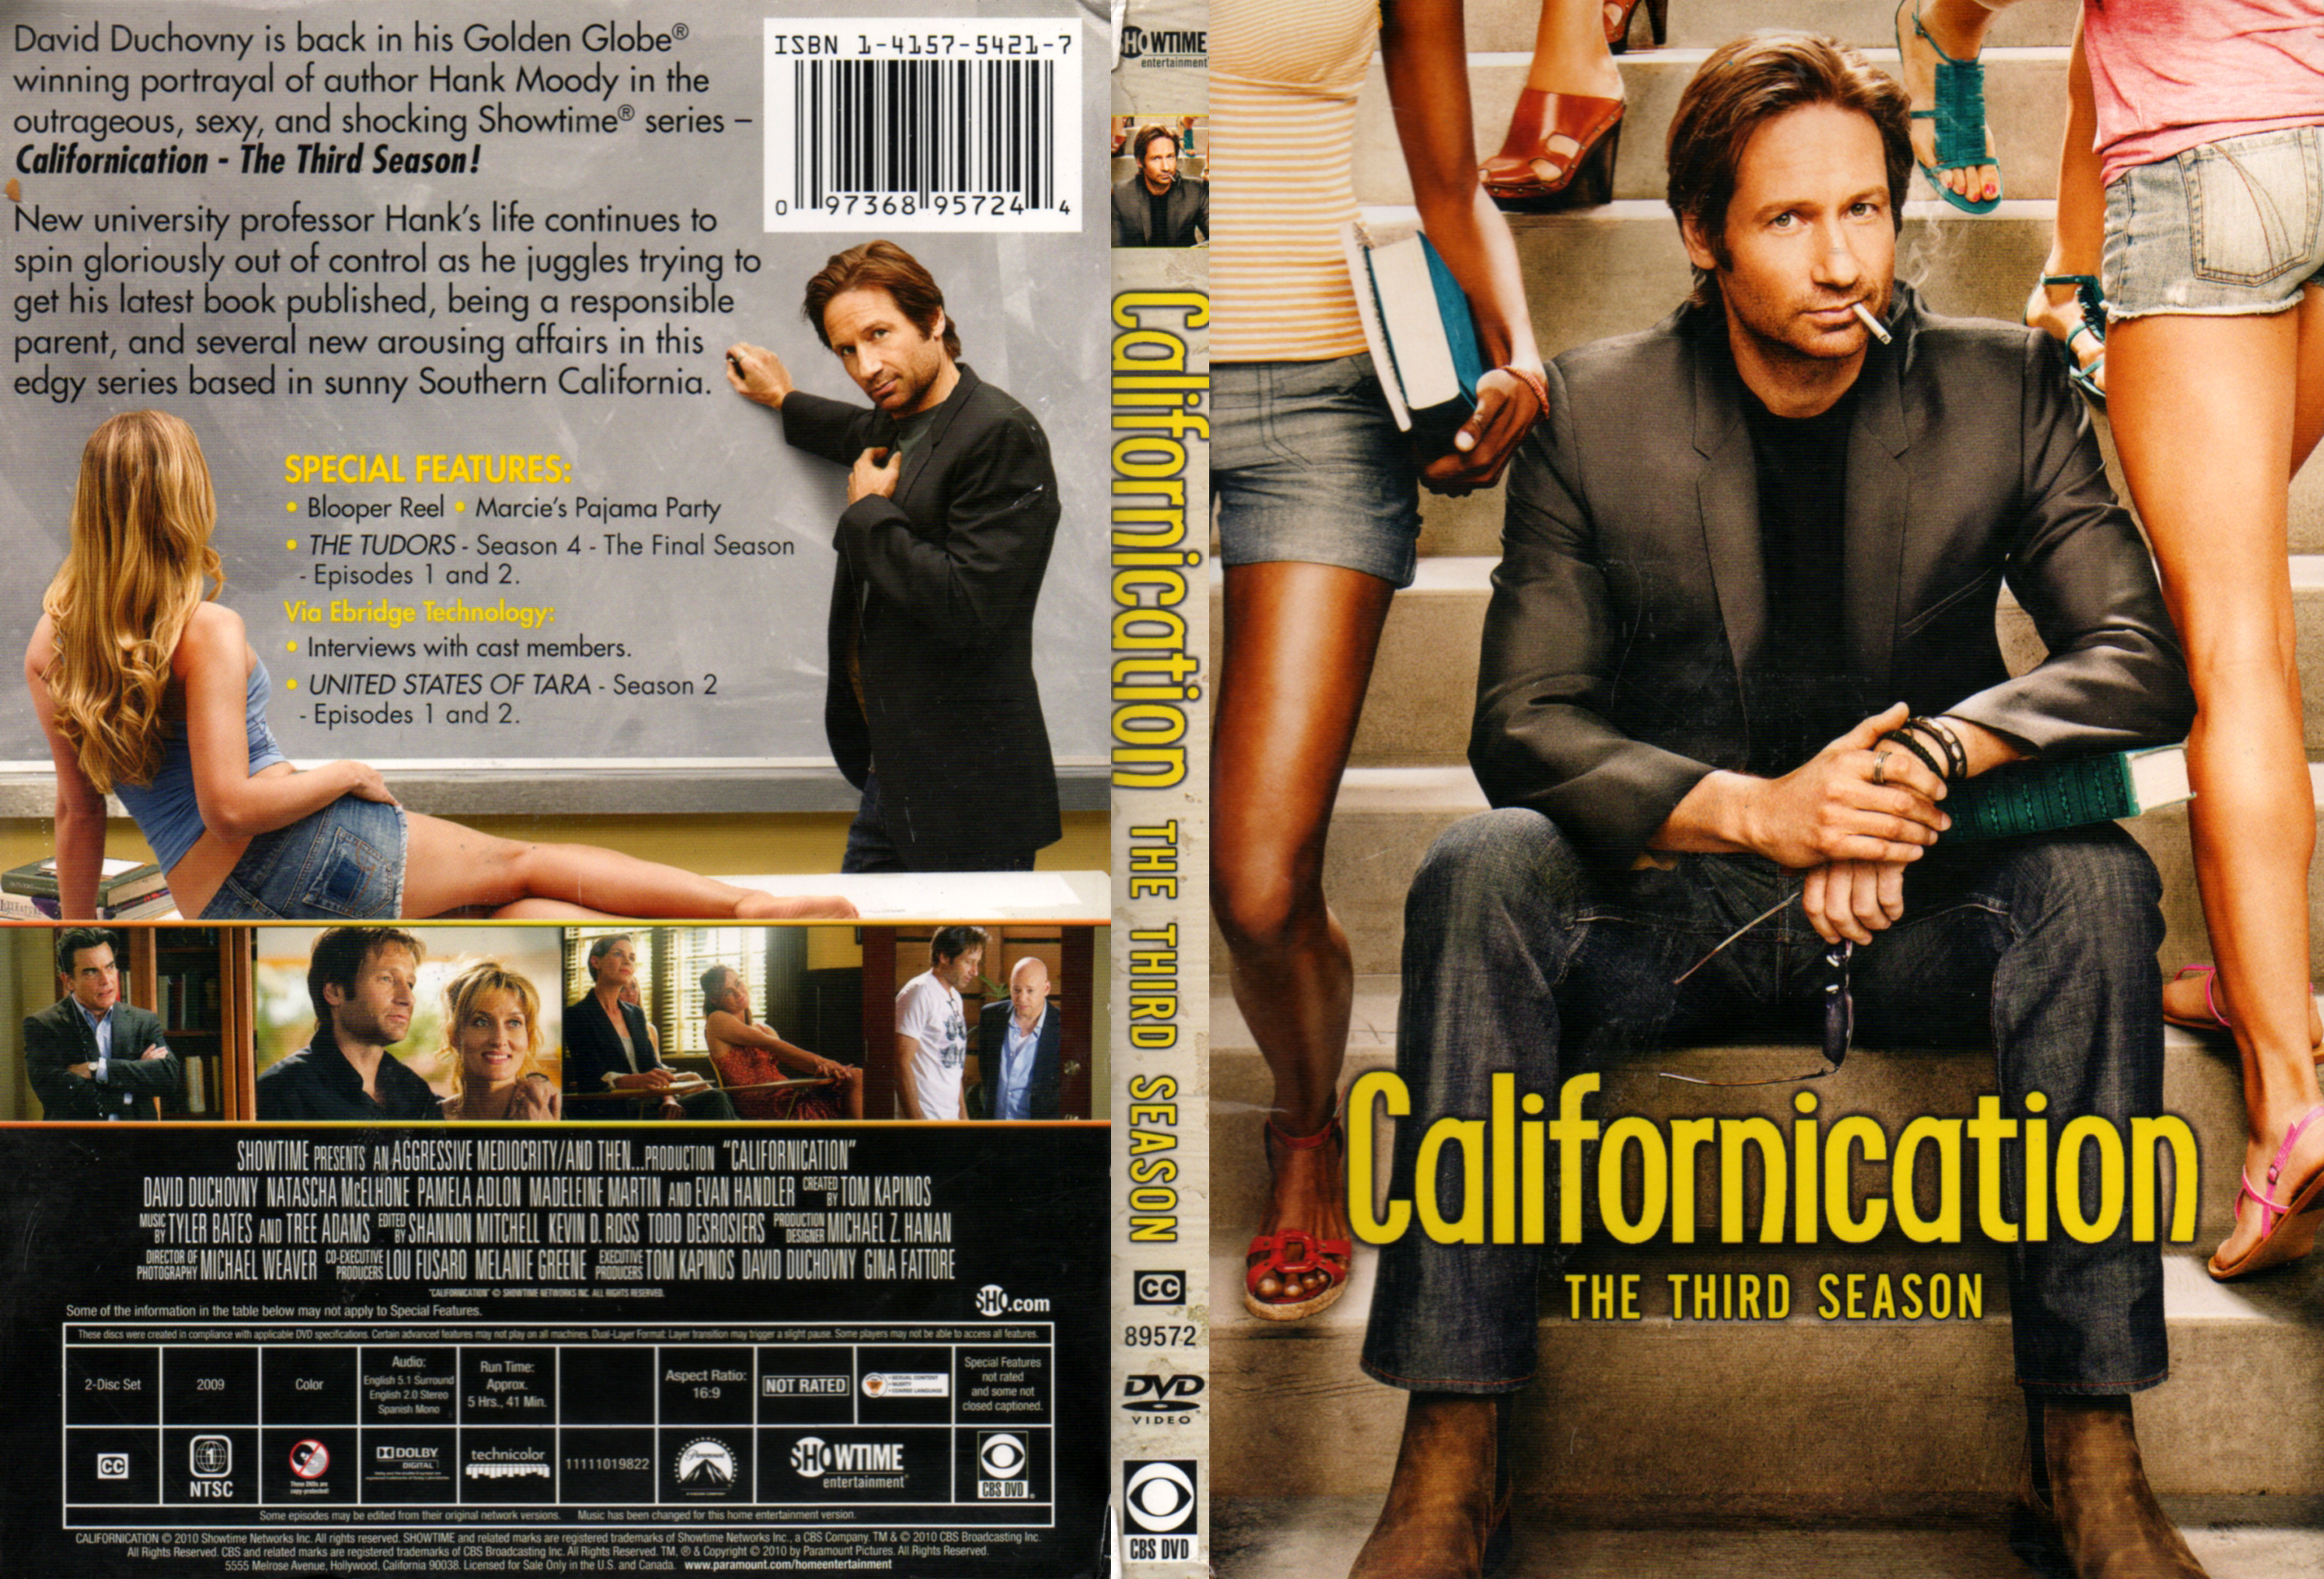 Jaquette DVD Californication saison 3 Zone 1